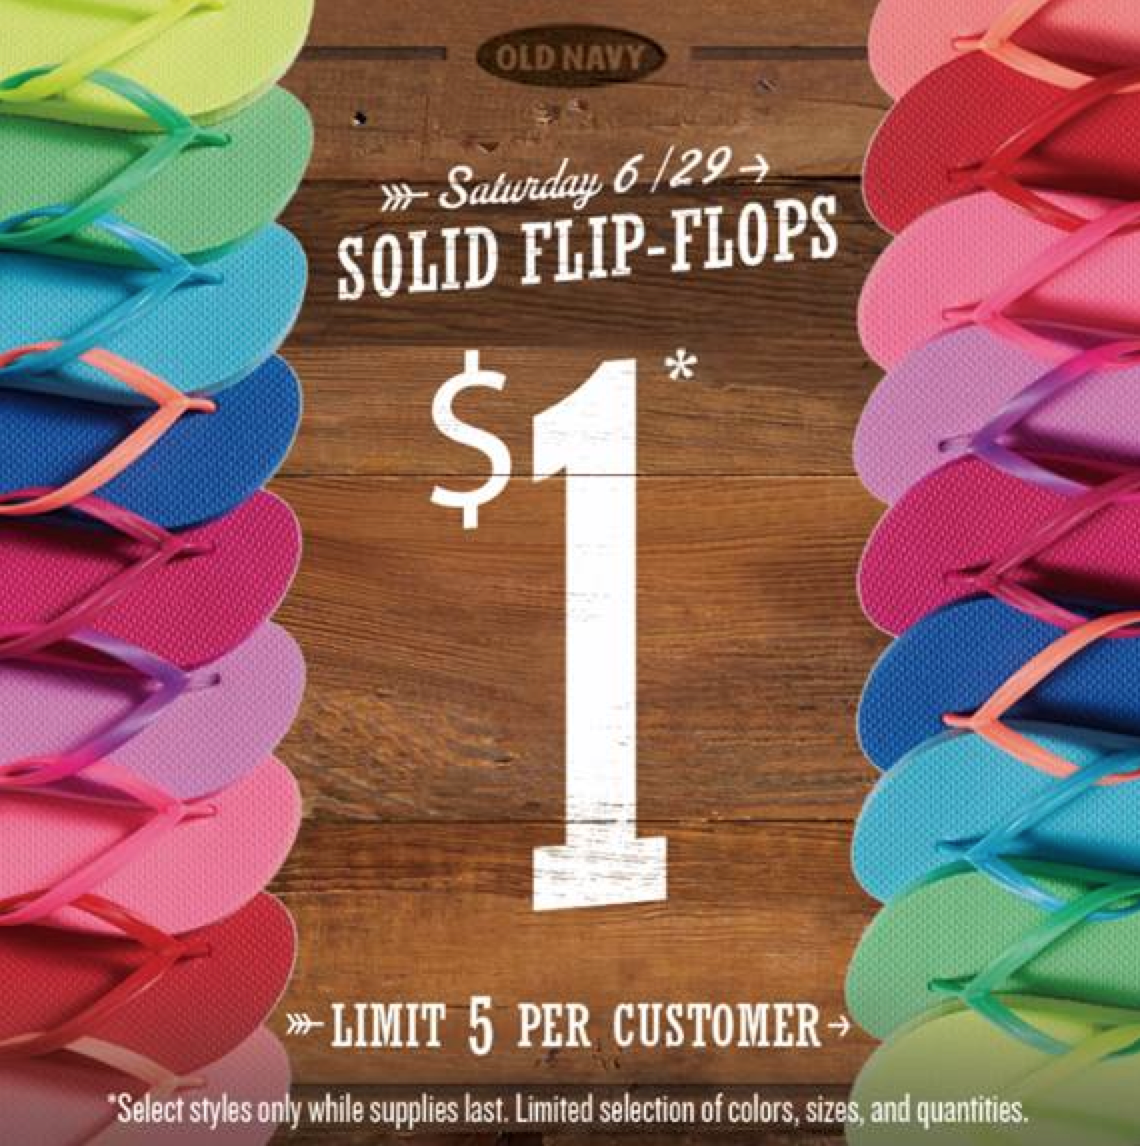 old navy flip flop sale $1